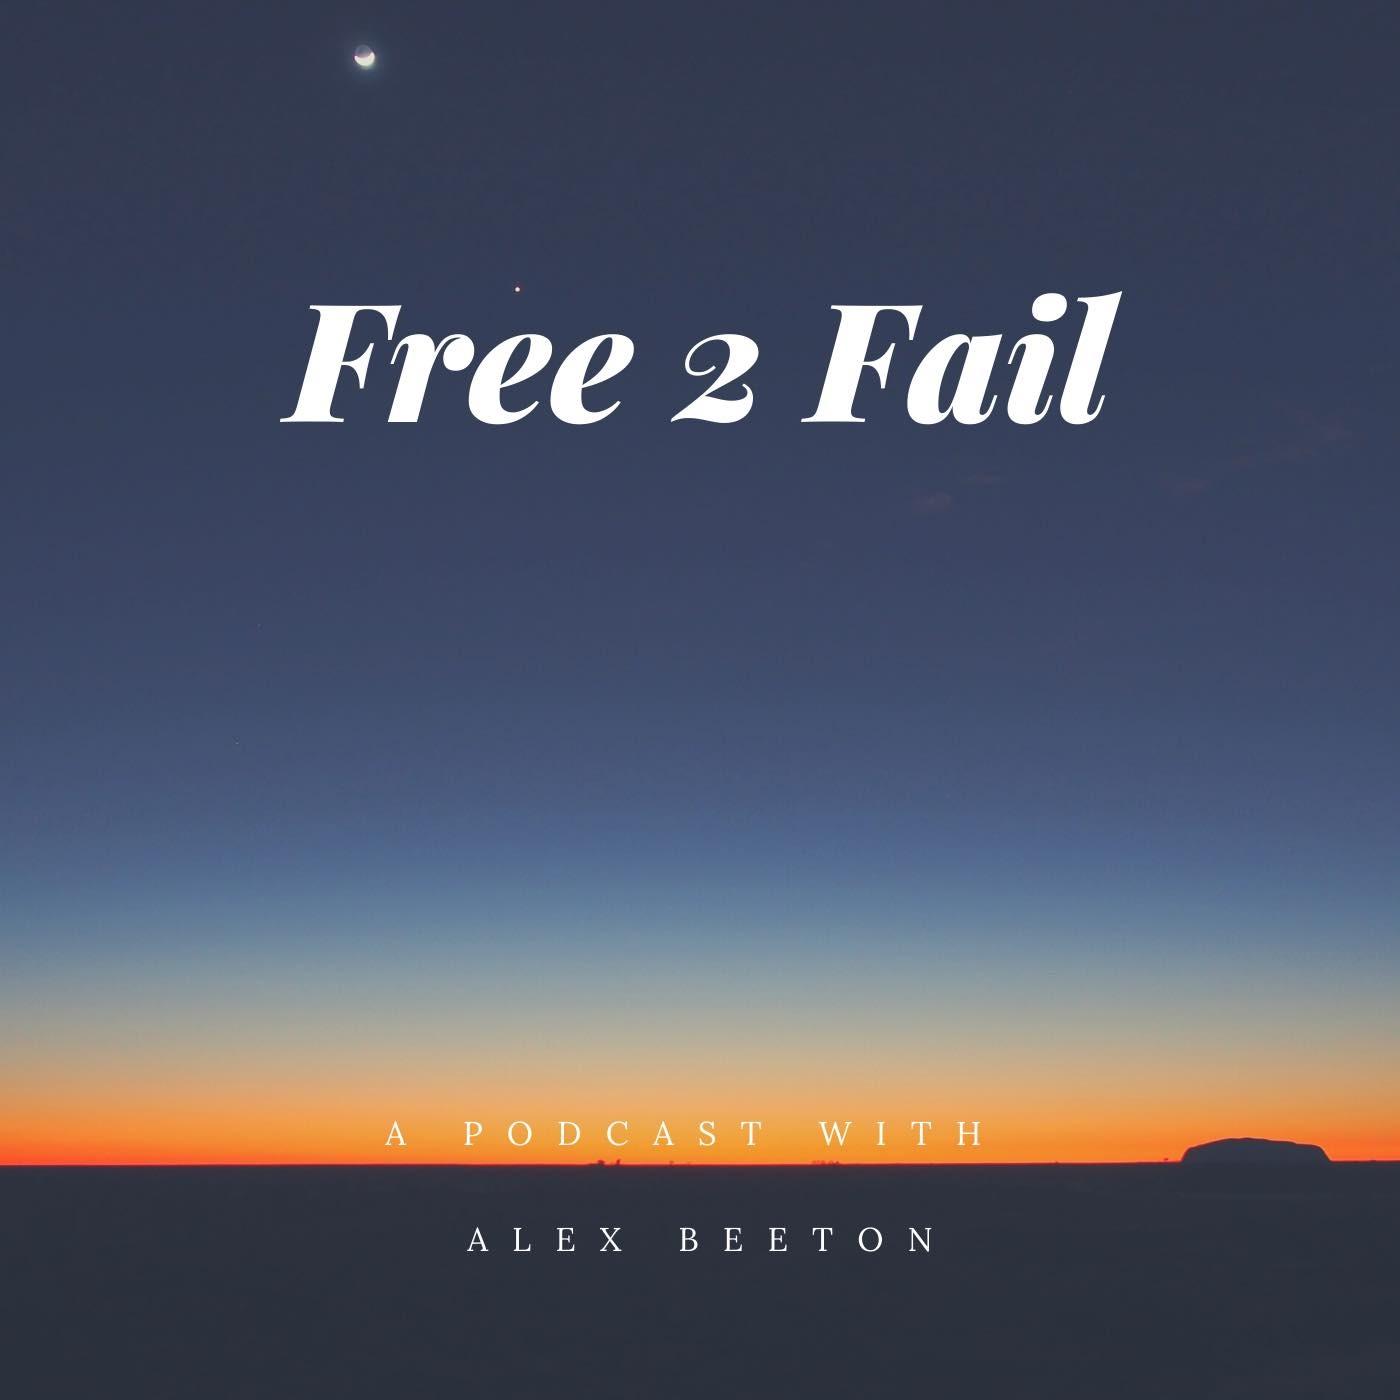 Free 2 Fail